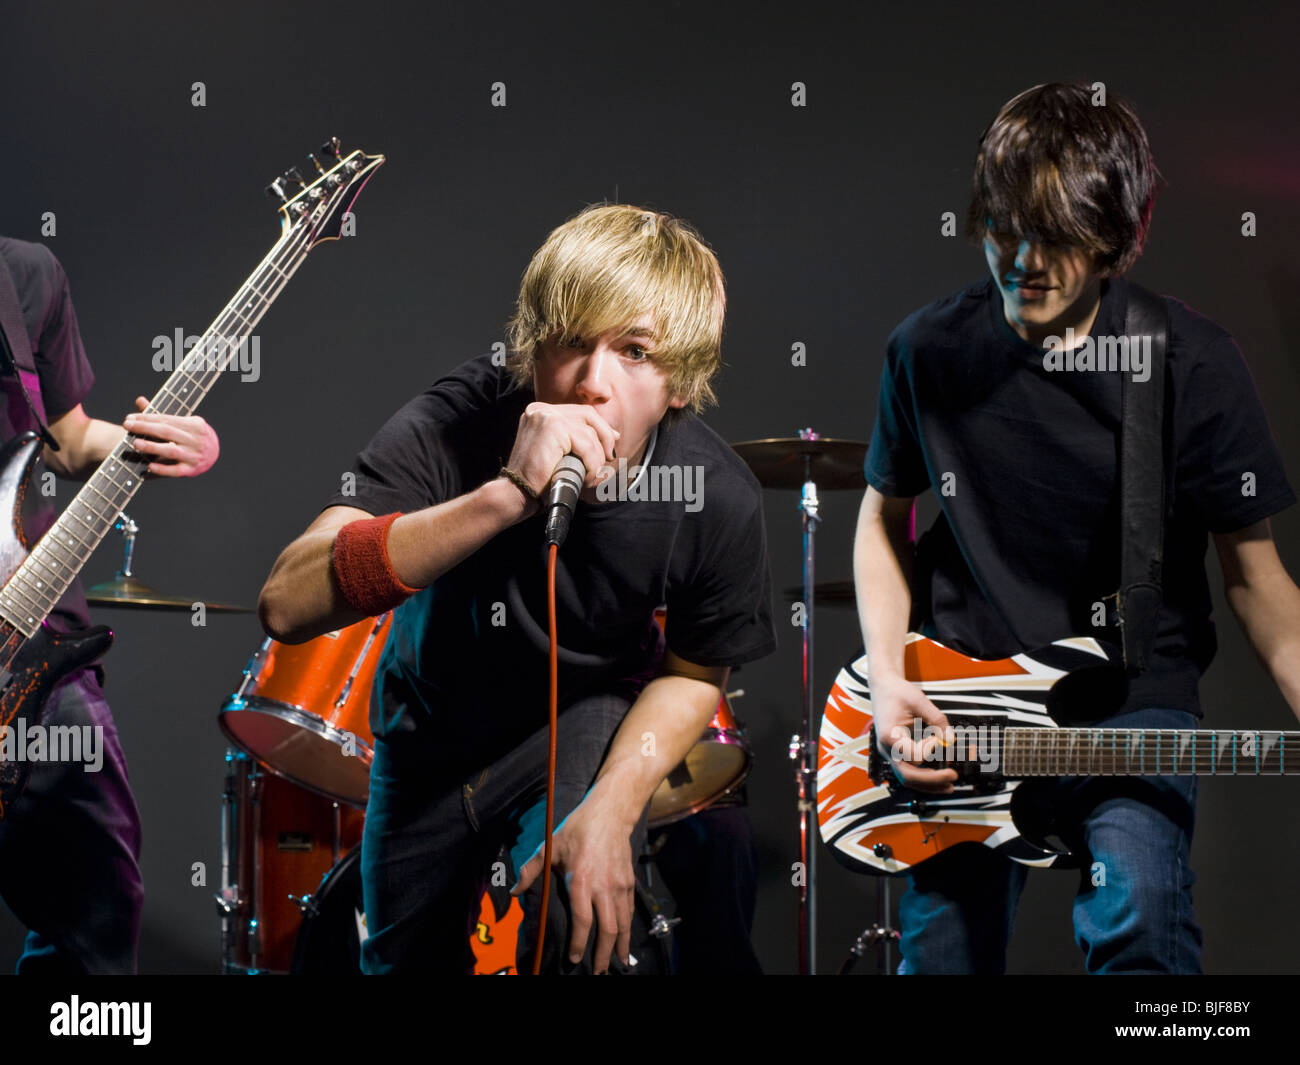 Banda de Rock adolescente Foto de stock